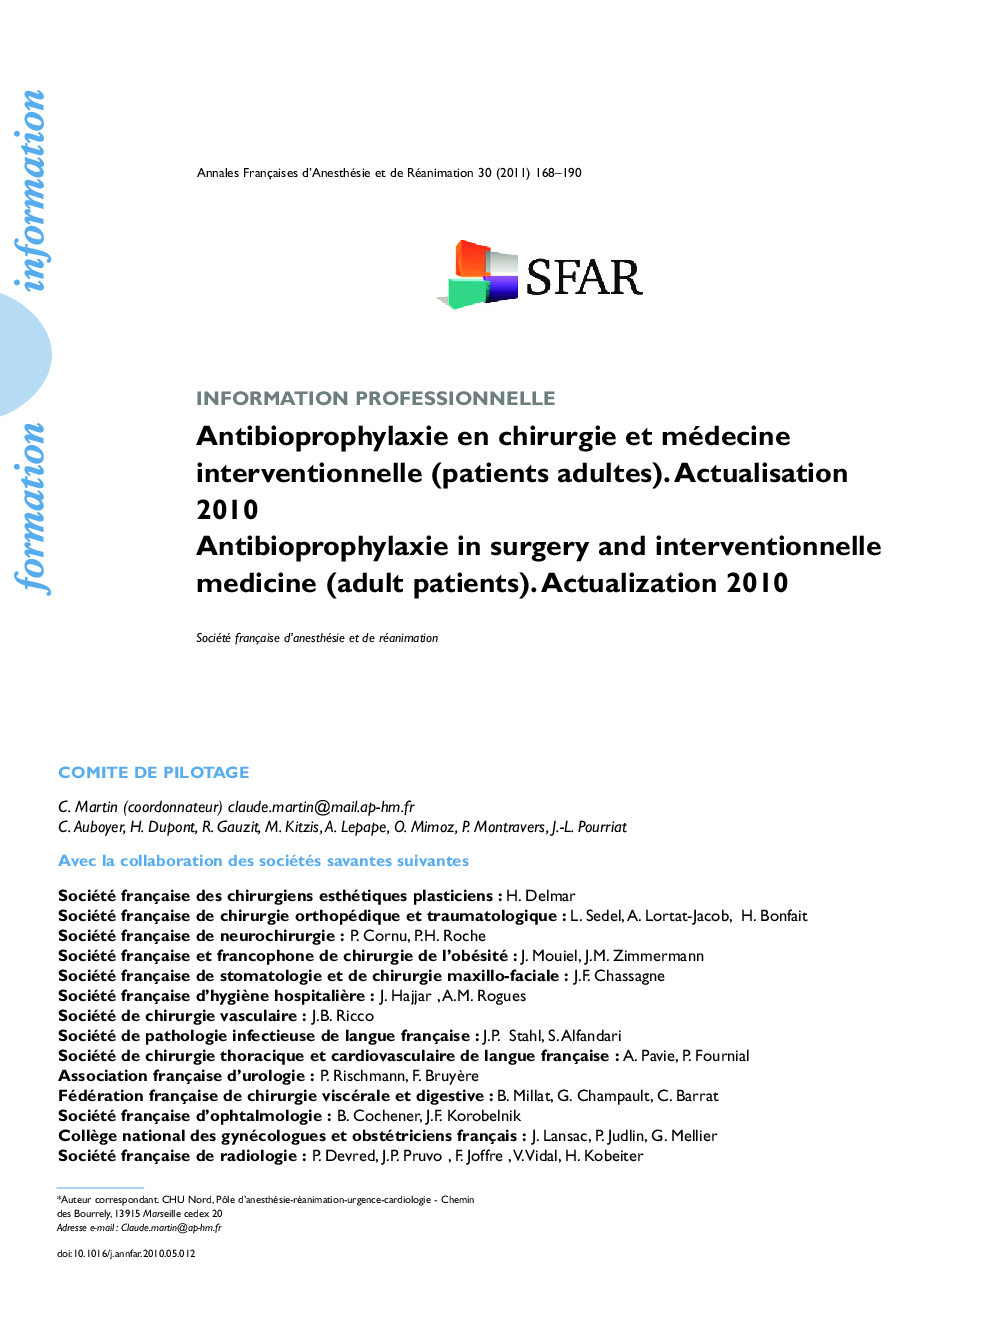 Antibioprophylaxie en chirurgie et médecine interventionnelle (patients adultes). Actualisation 2010